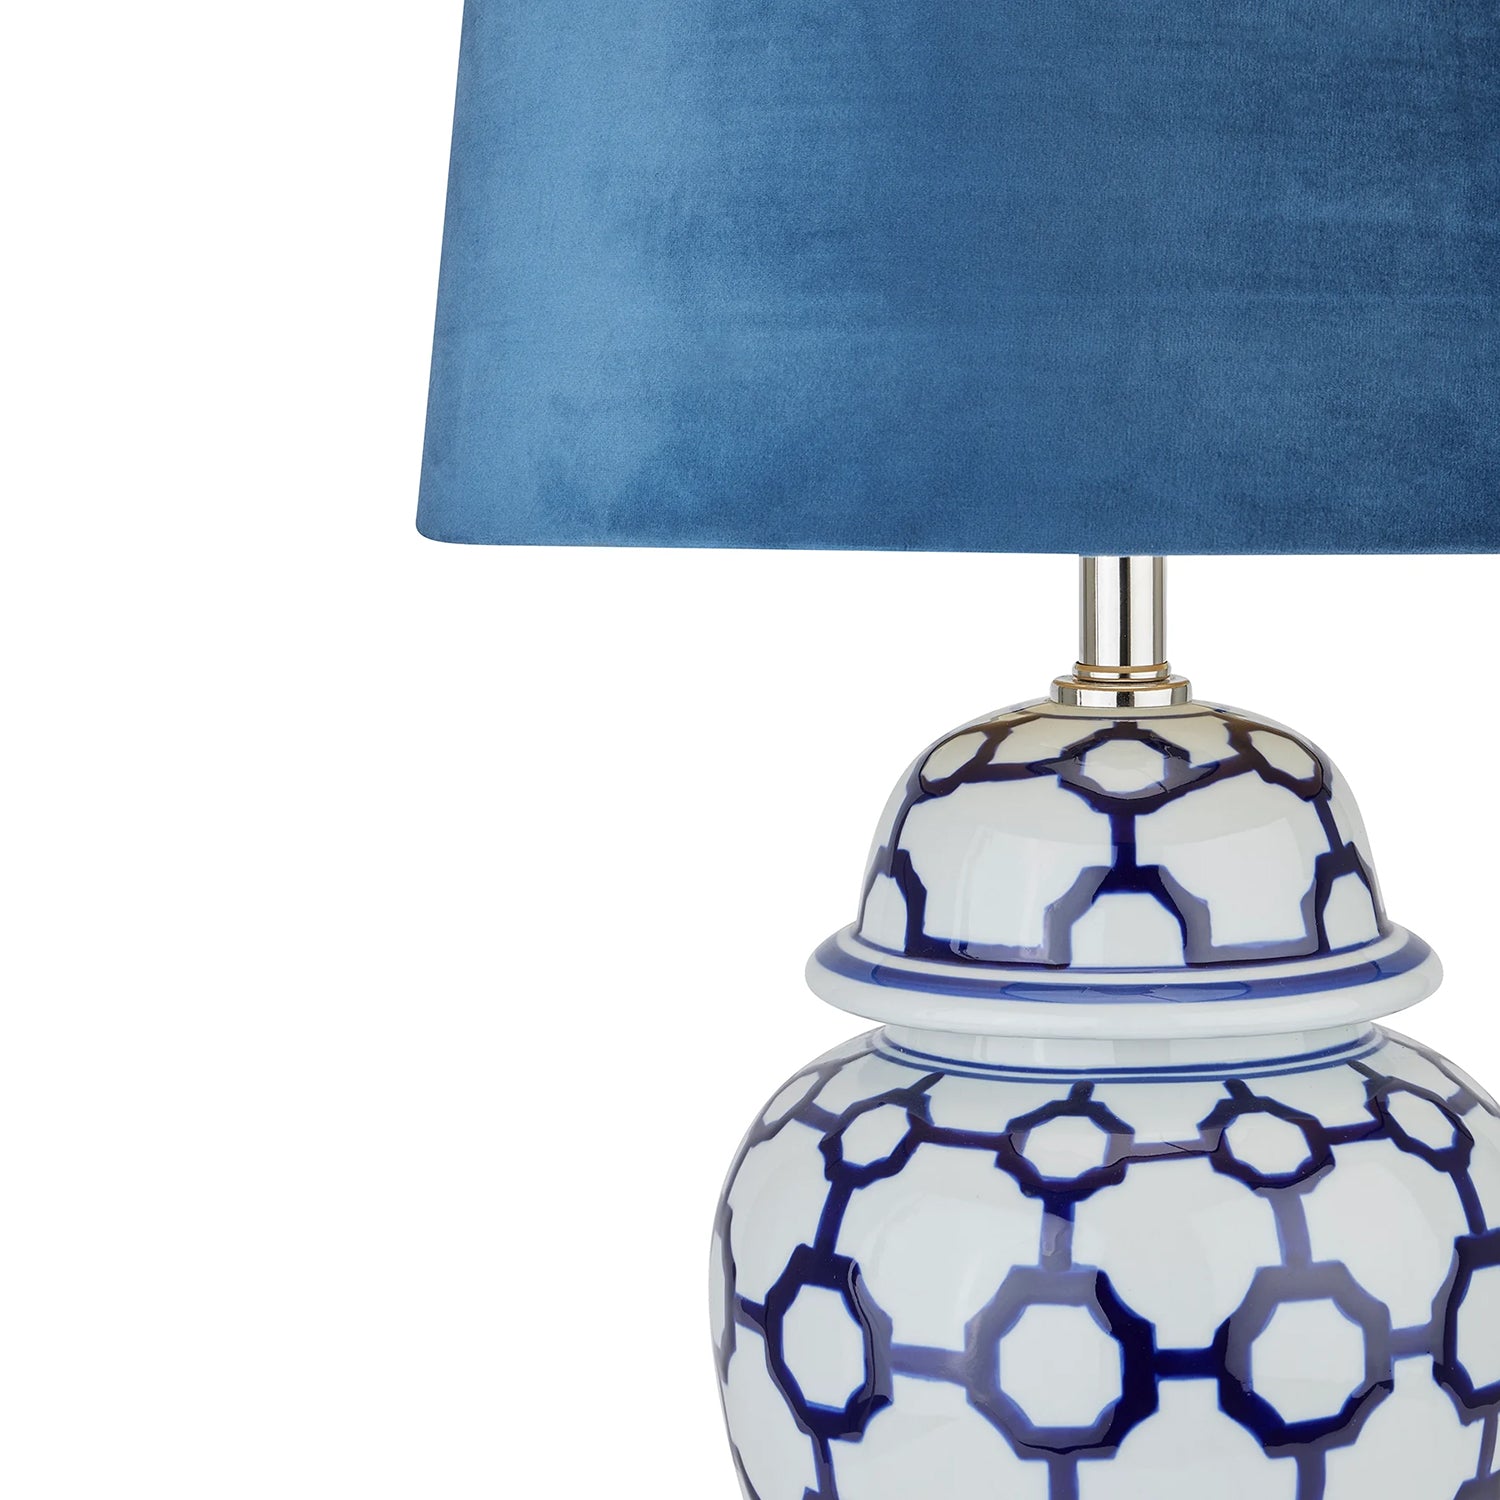 Acanthus blue and white ceramic lamp